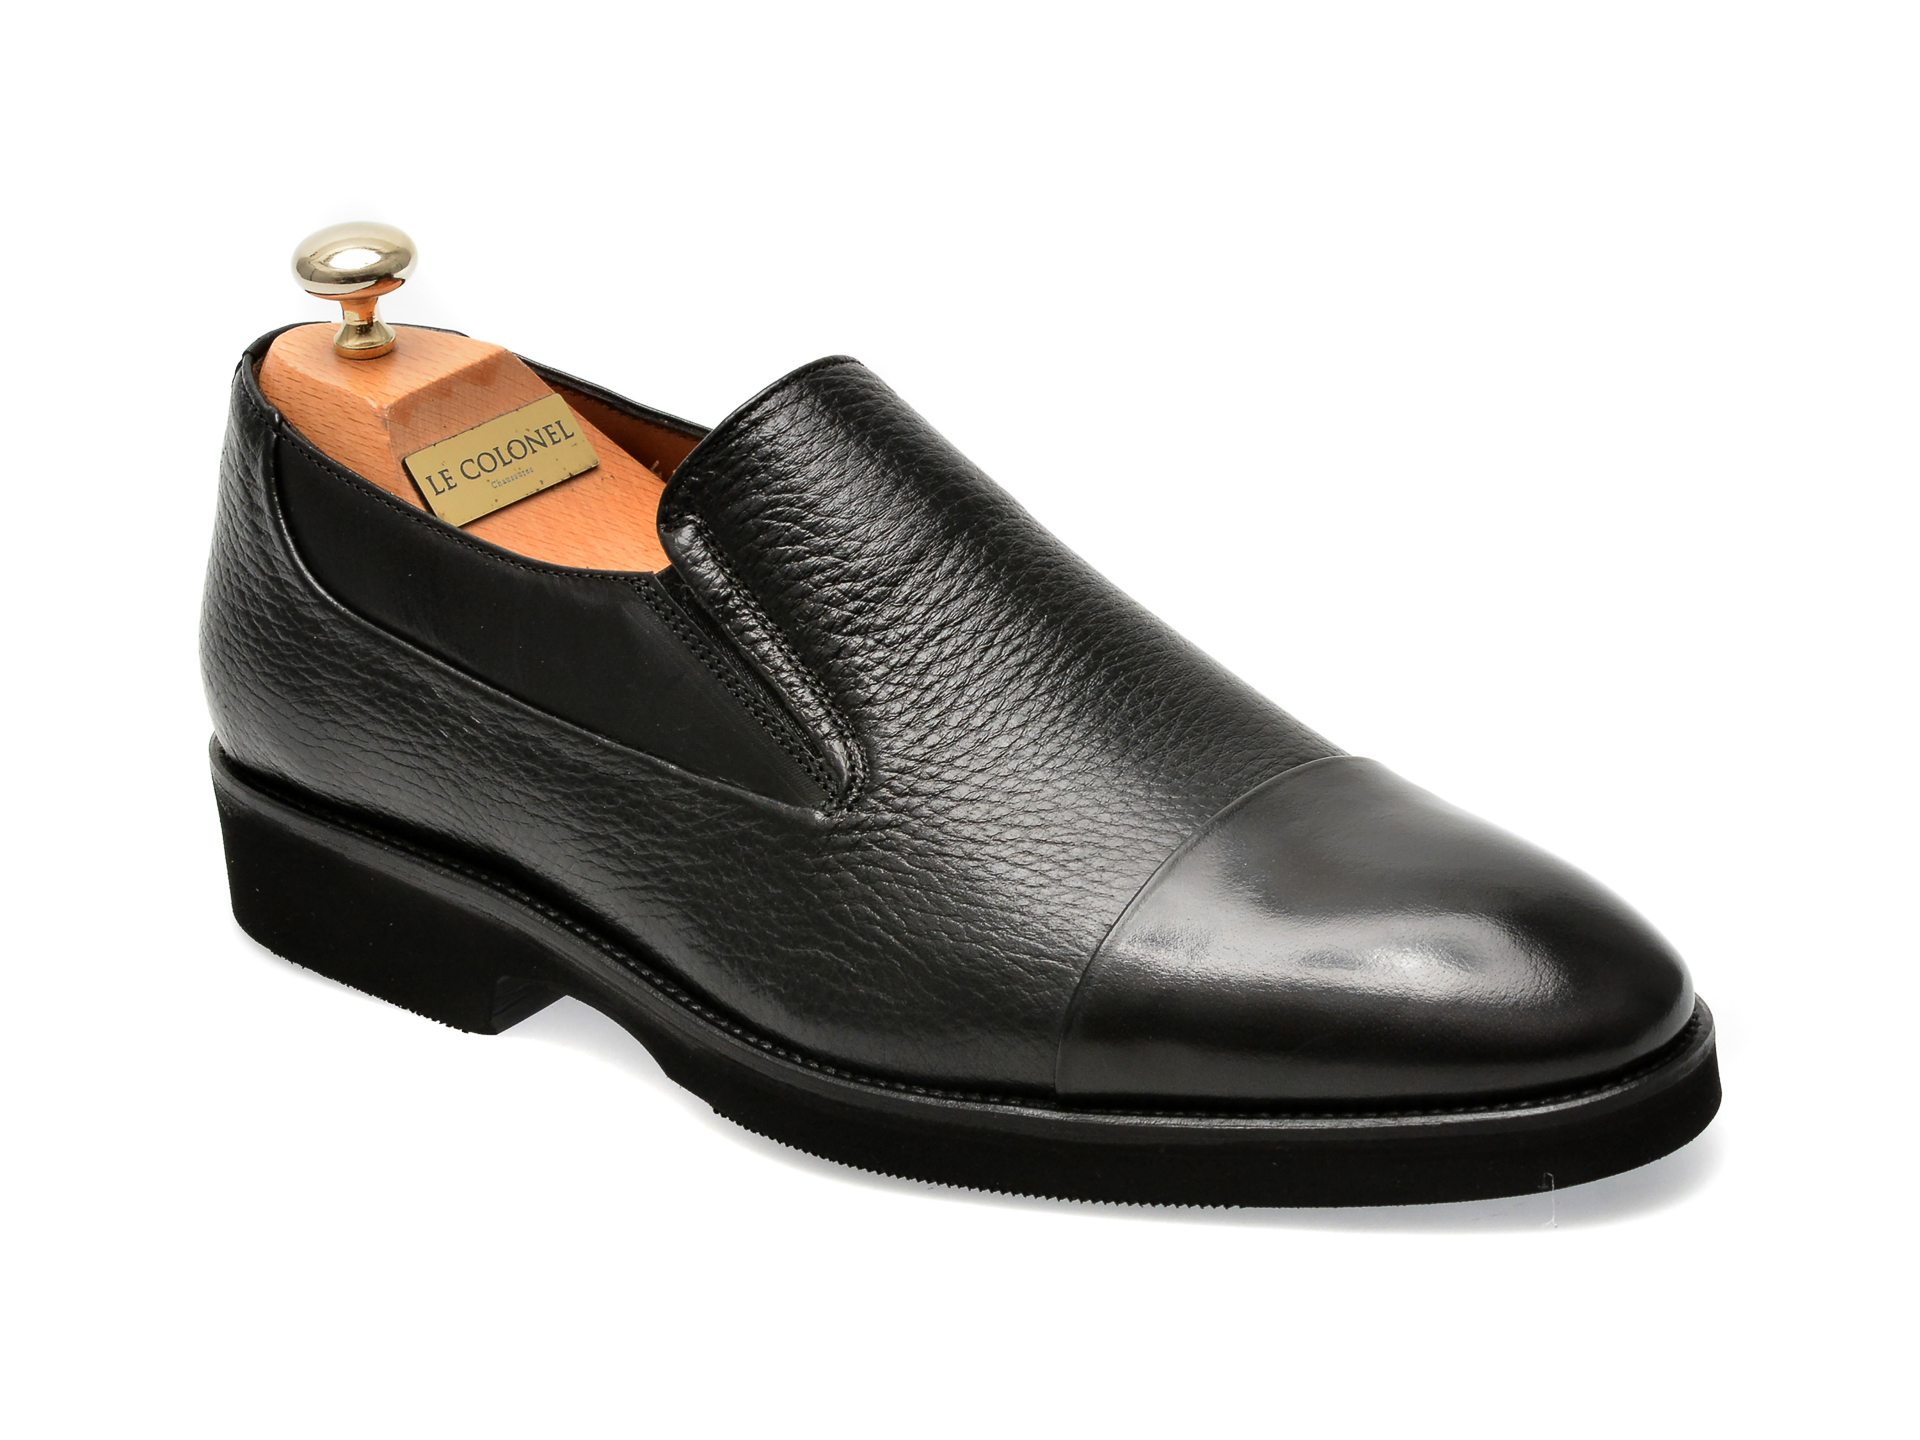 Pantofi LE COLONEL negri, 49879, din piele naturala barbati 2023-09-22